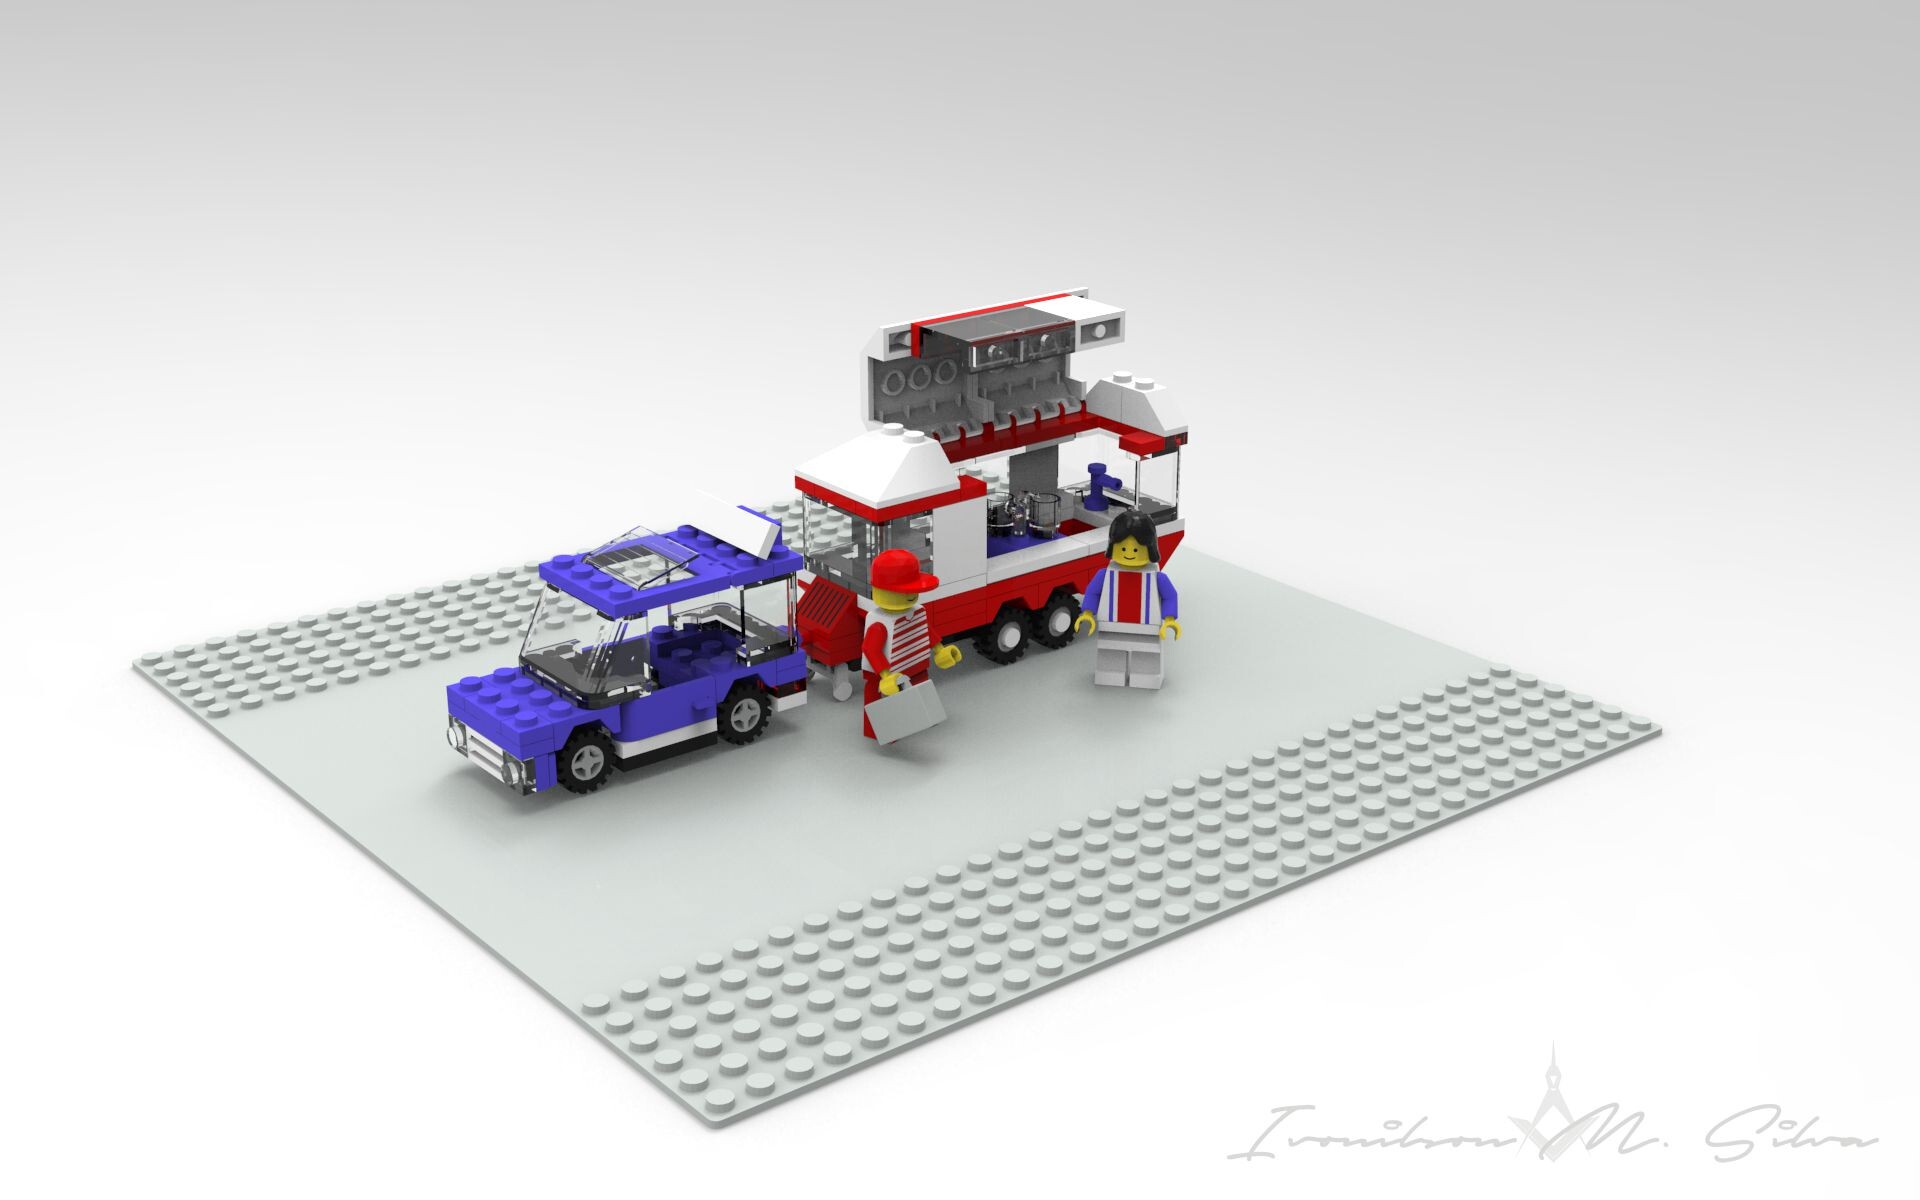 ArtStation - Lego City - 6590